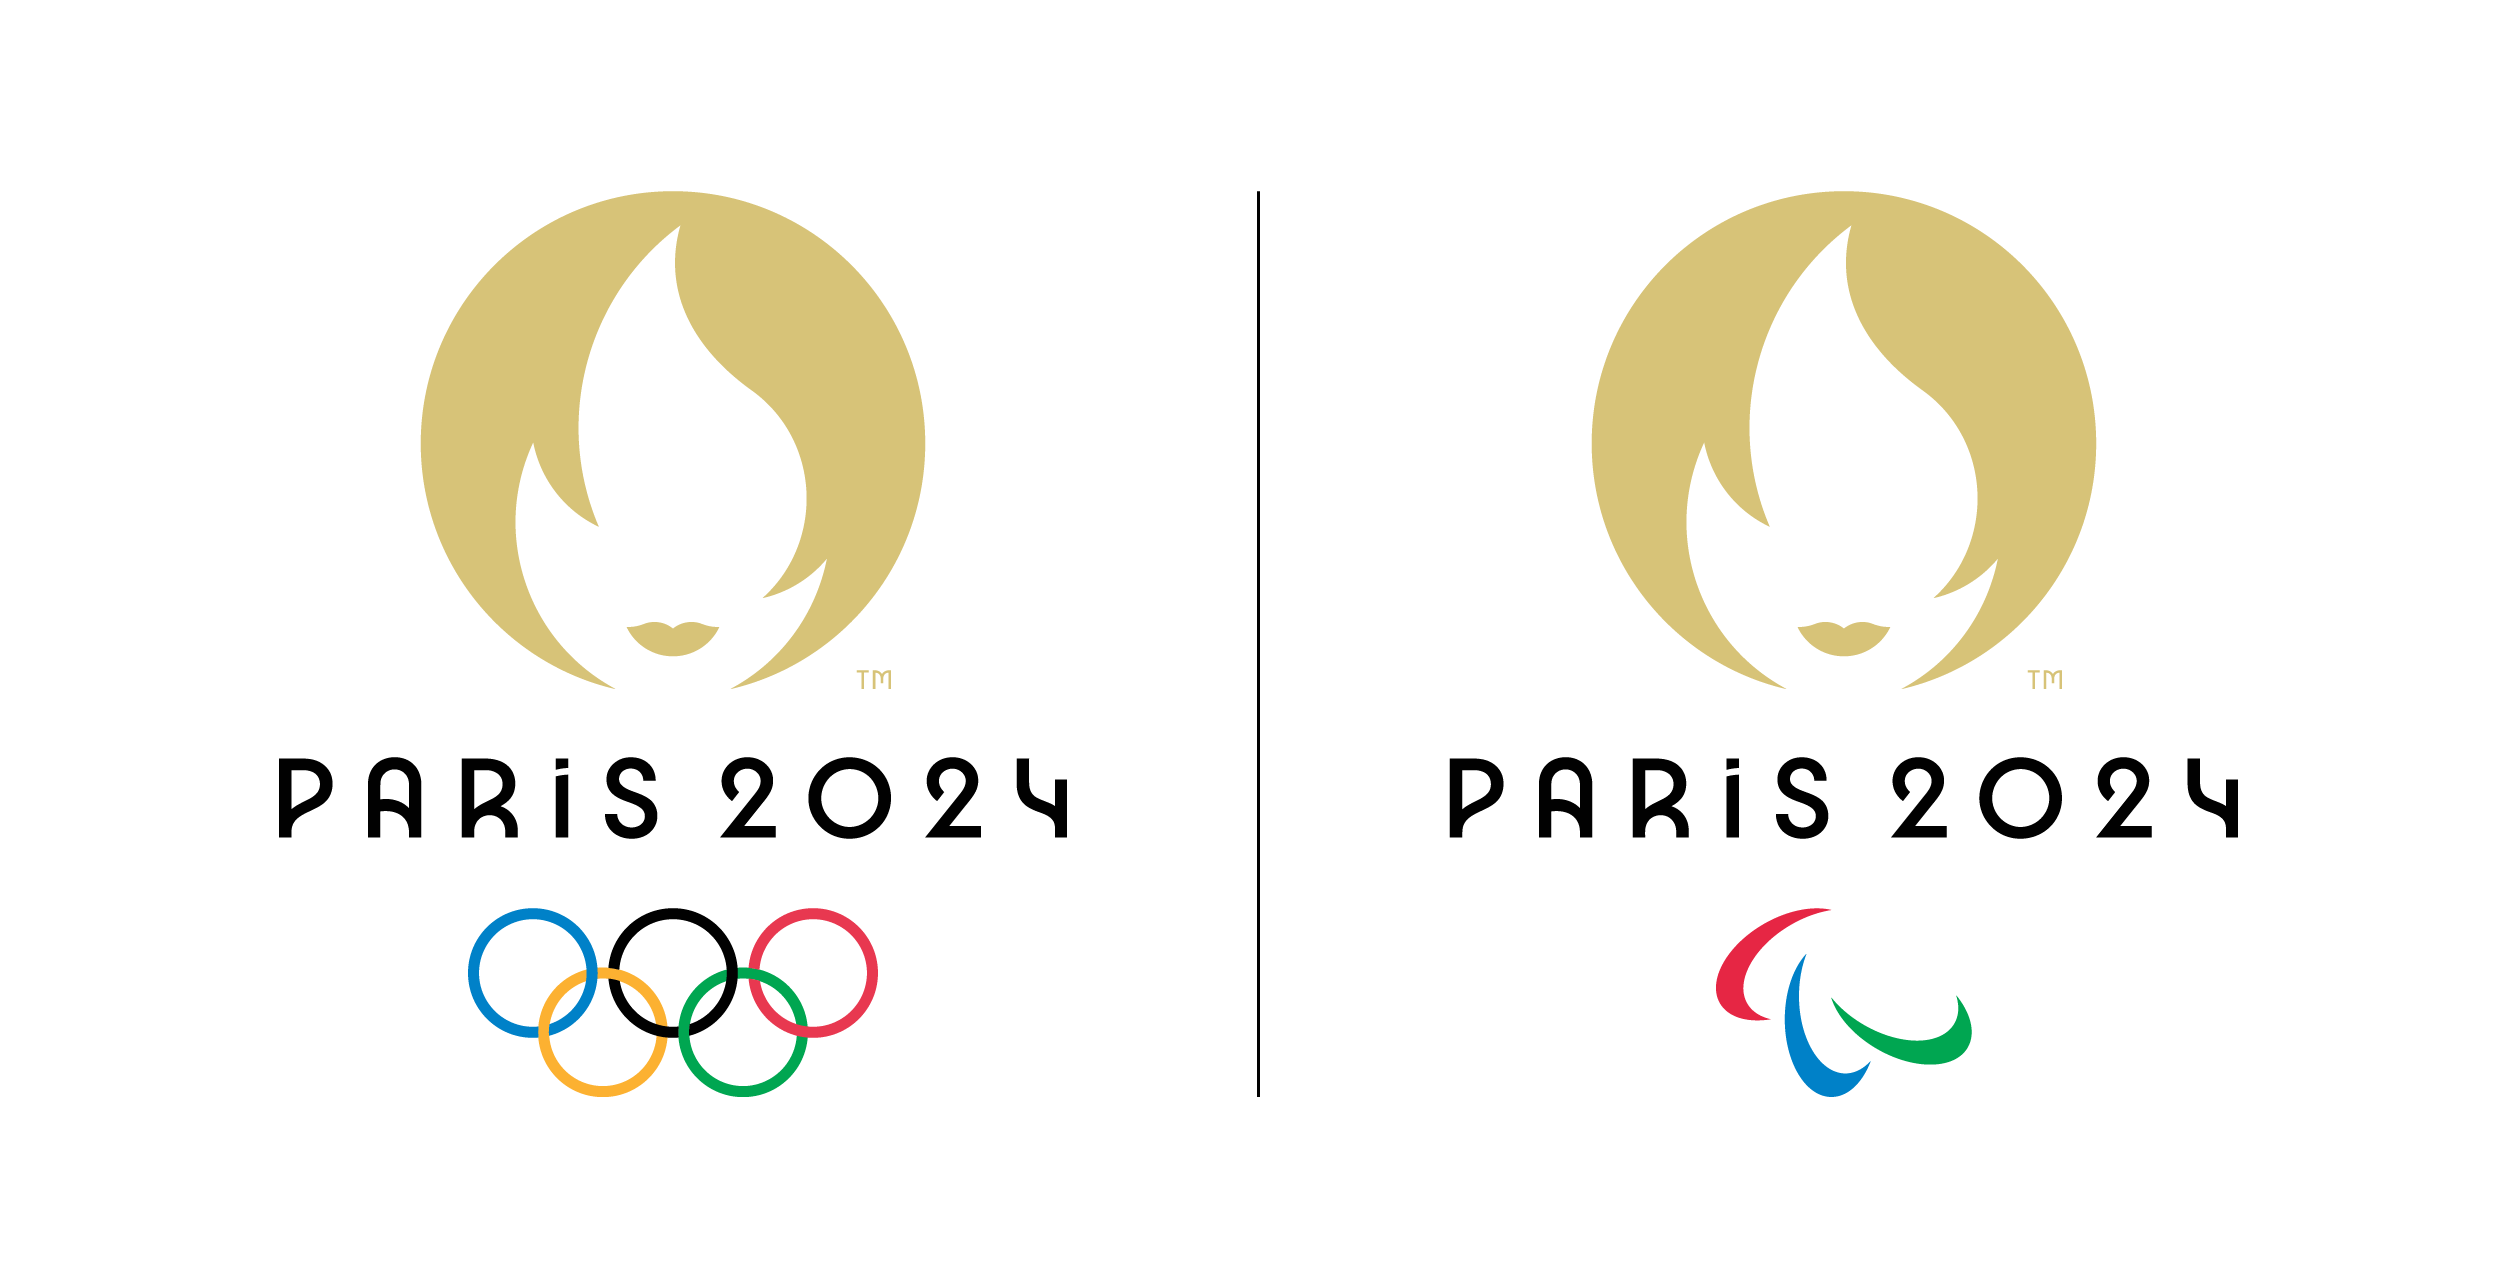 Logotipo vetorial dos jogos olímpicos de verão de paris 2024